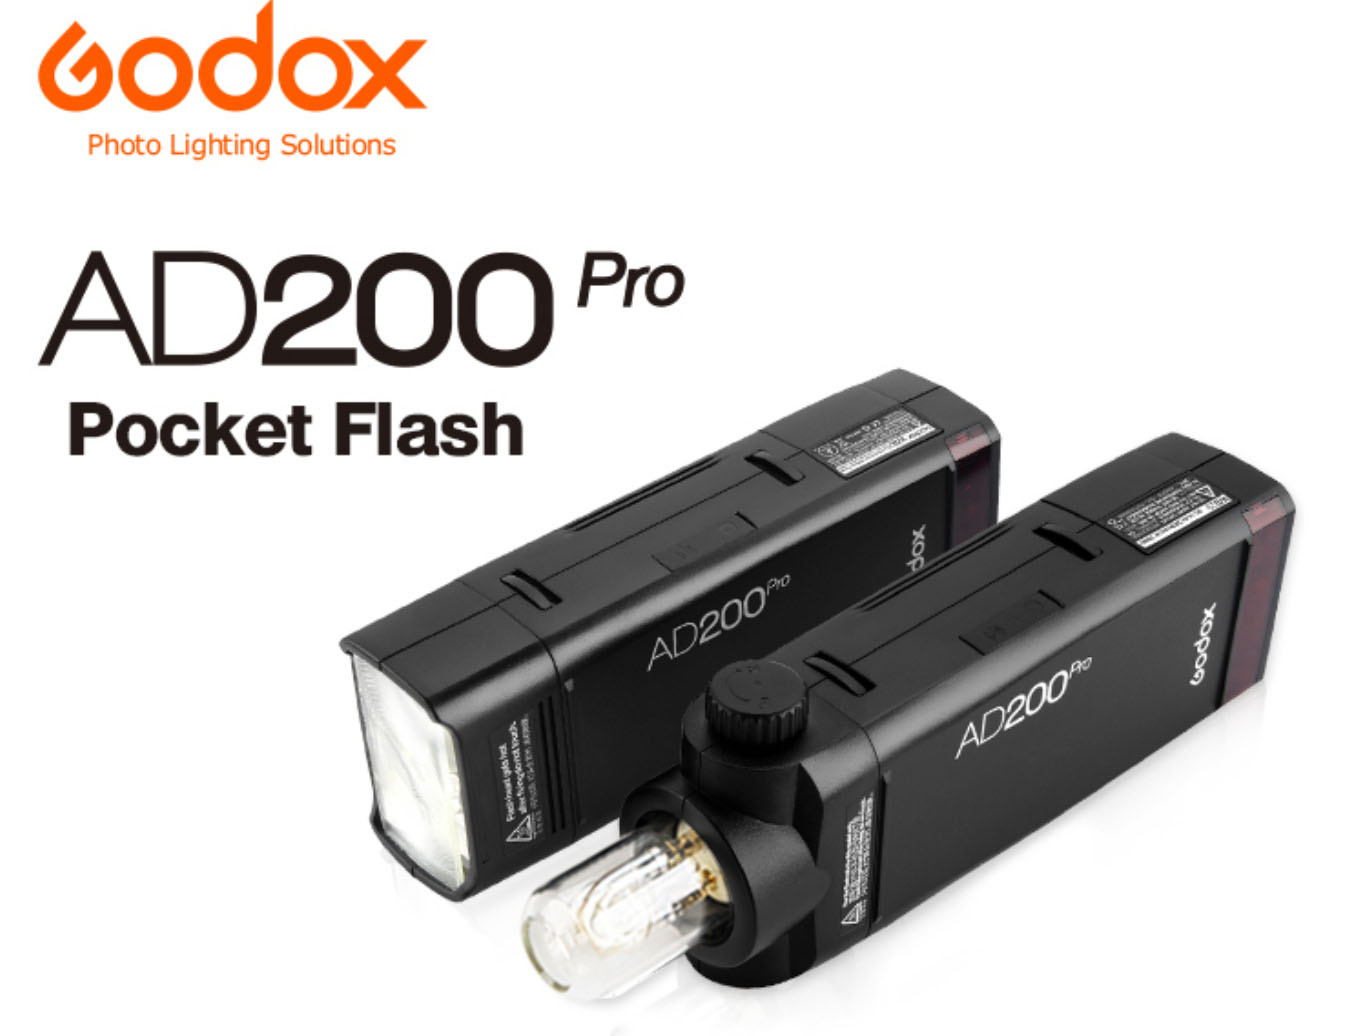 Accesorios para el flash Godox AD200Pro